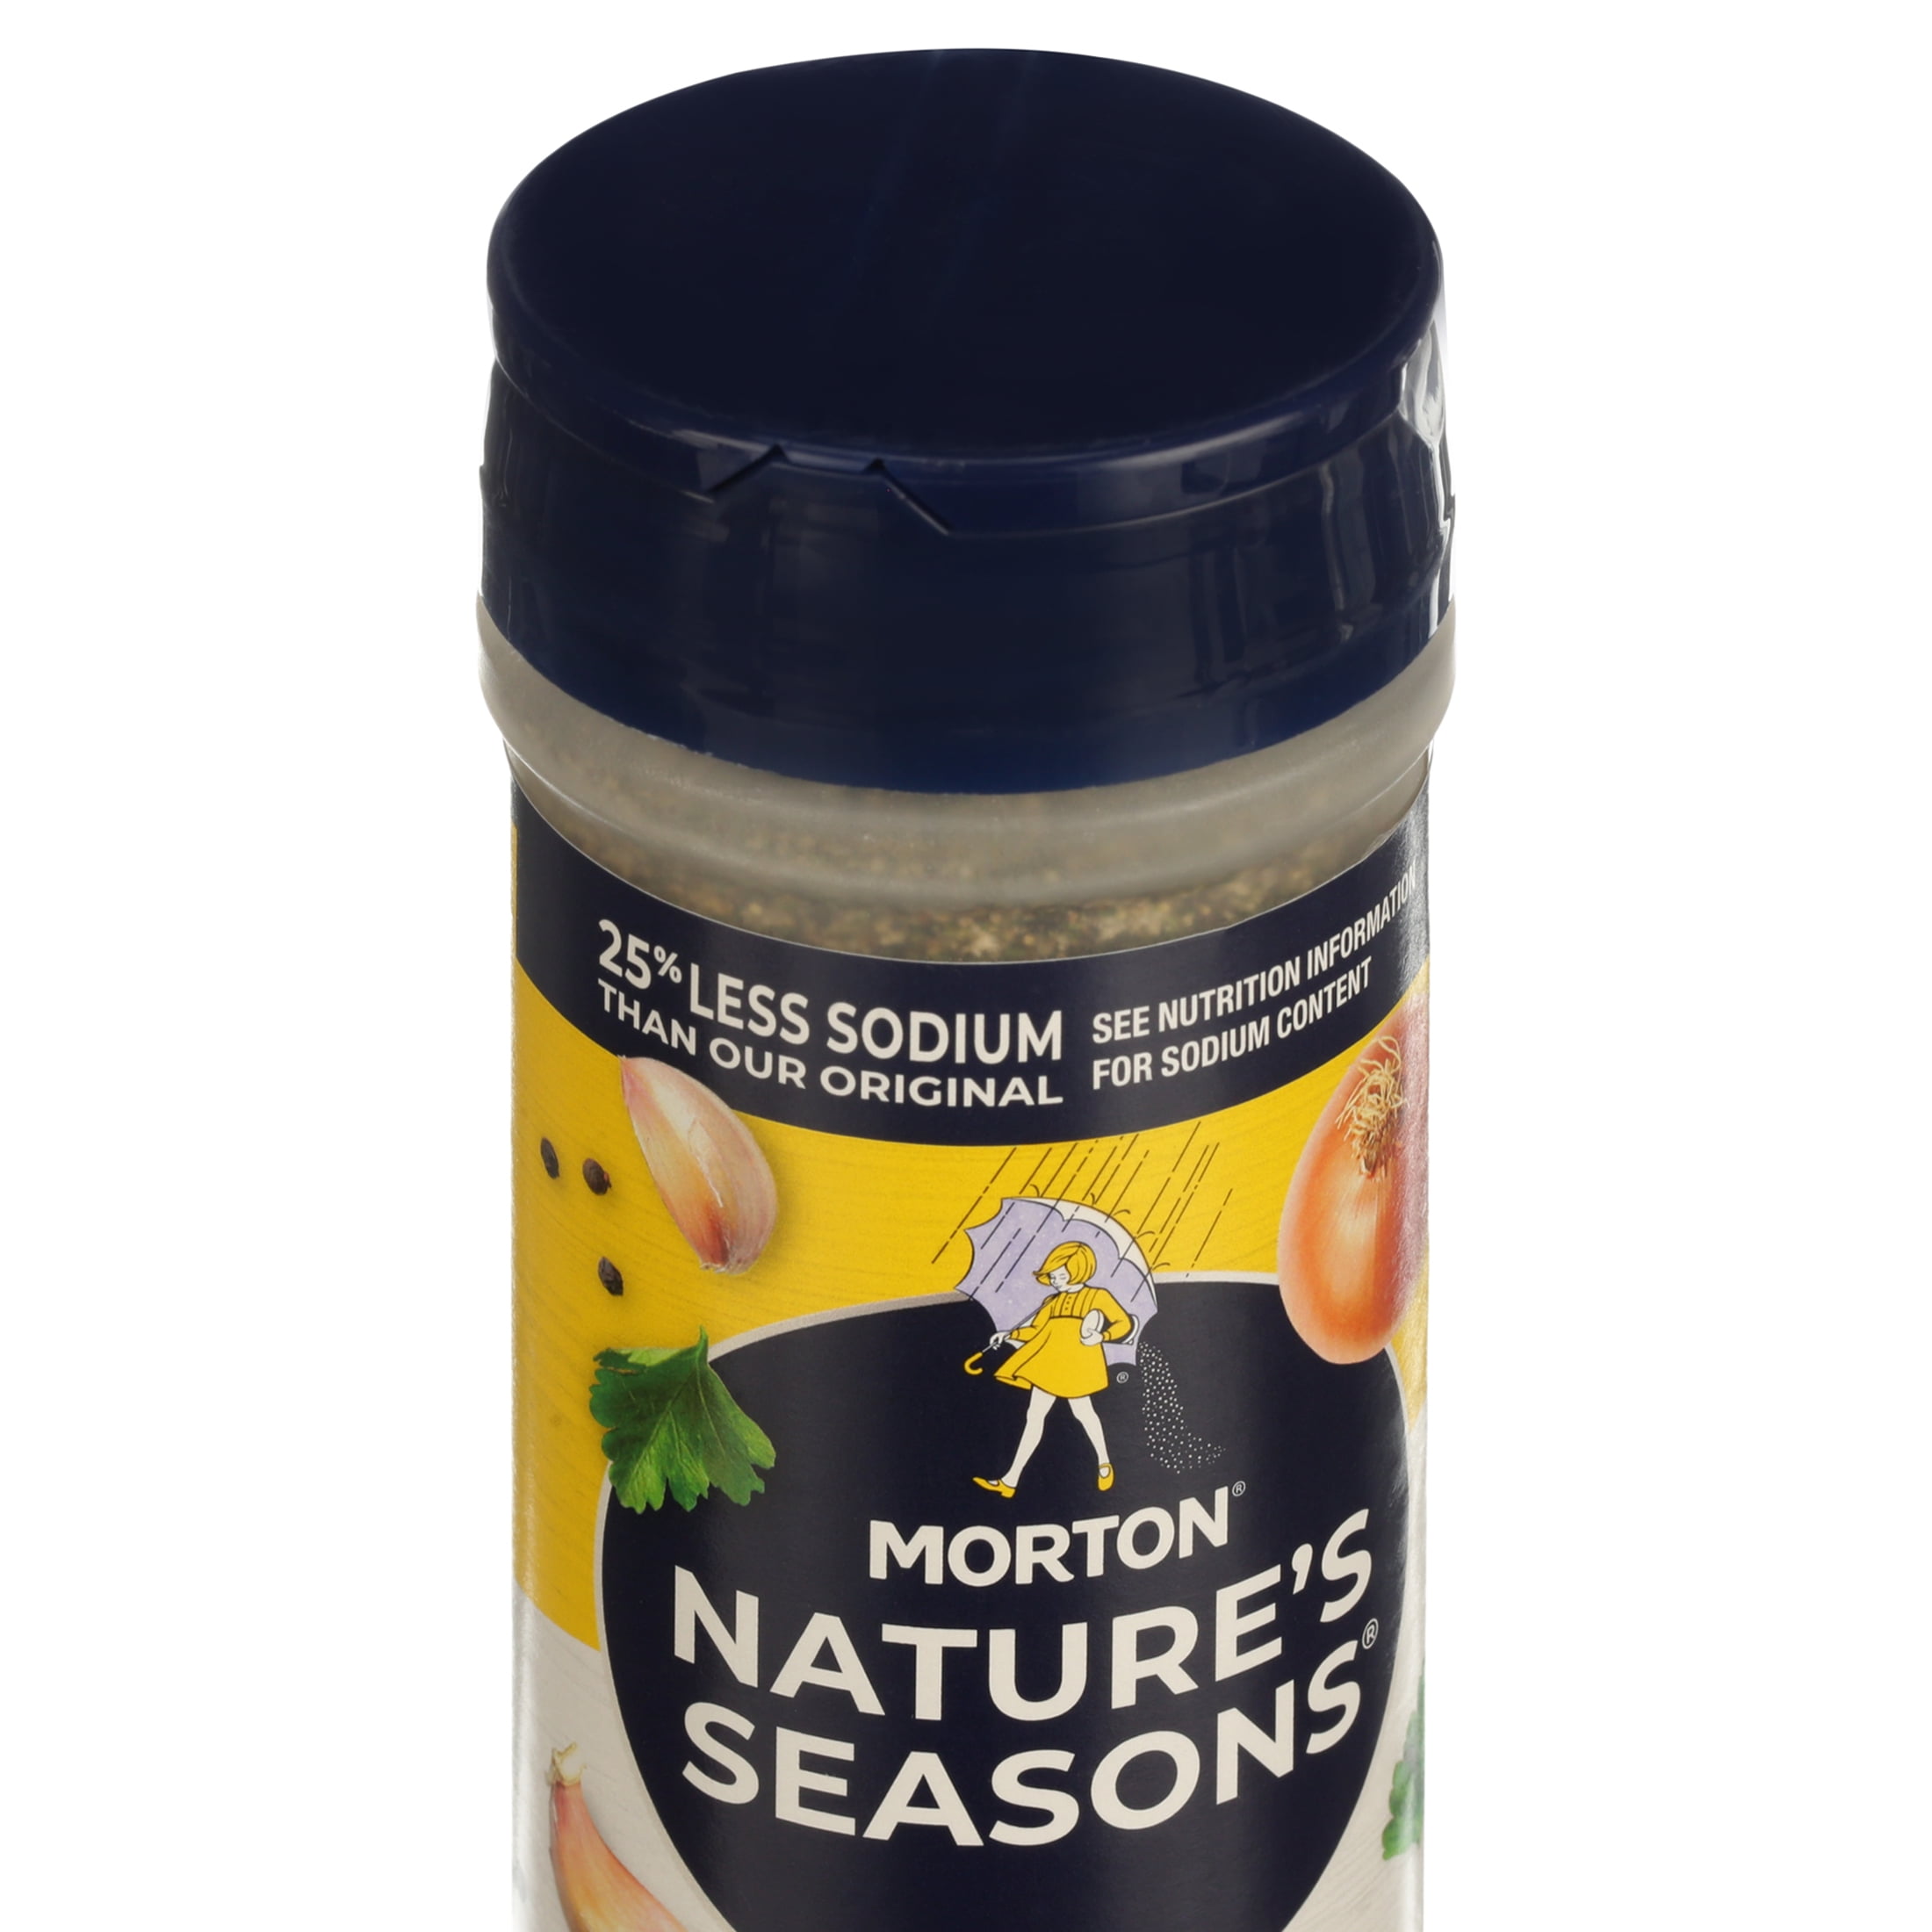 Morton Salt Nature's Seasons Seasoning Blend, 25% Less Sodium, 7.5 oz 